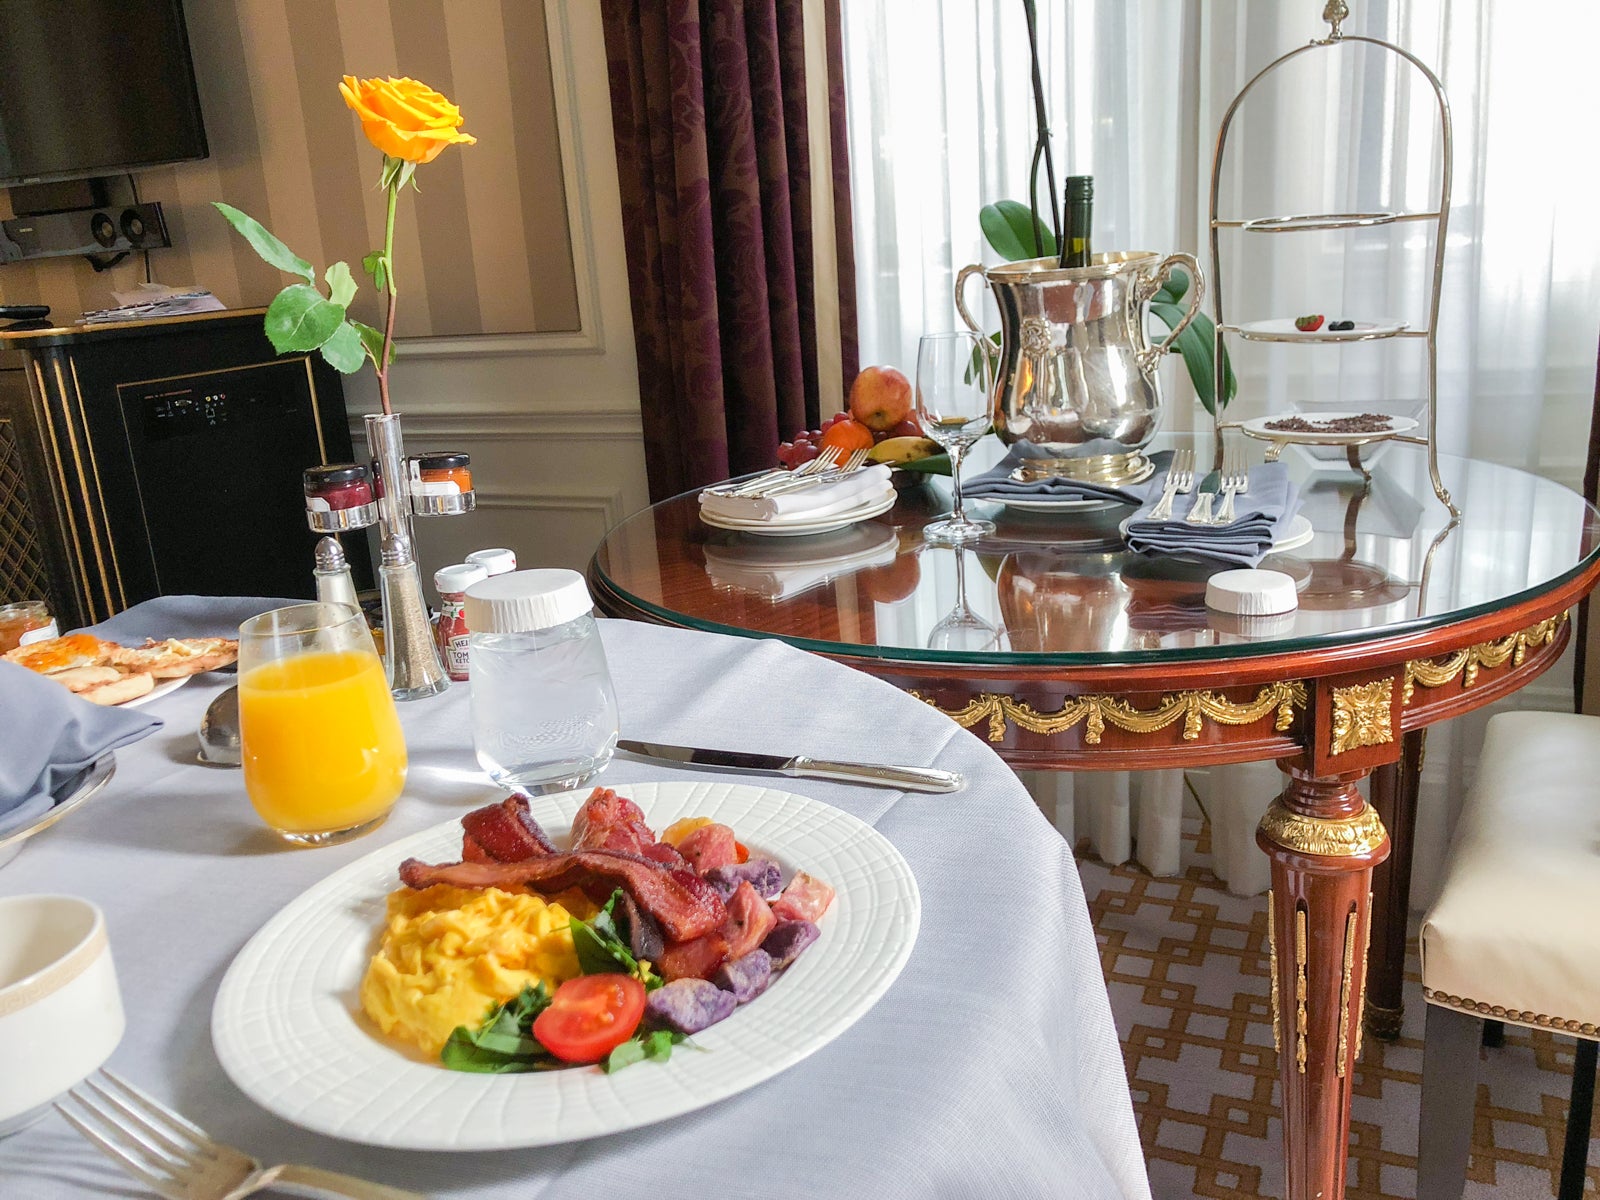 Enjoy free breakfast with Marriott Platinum